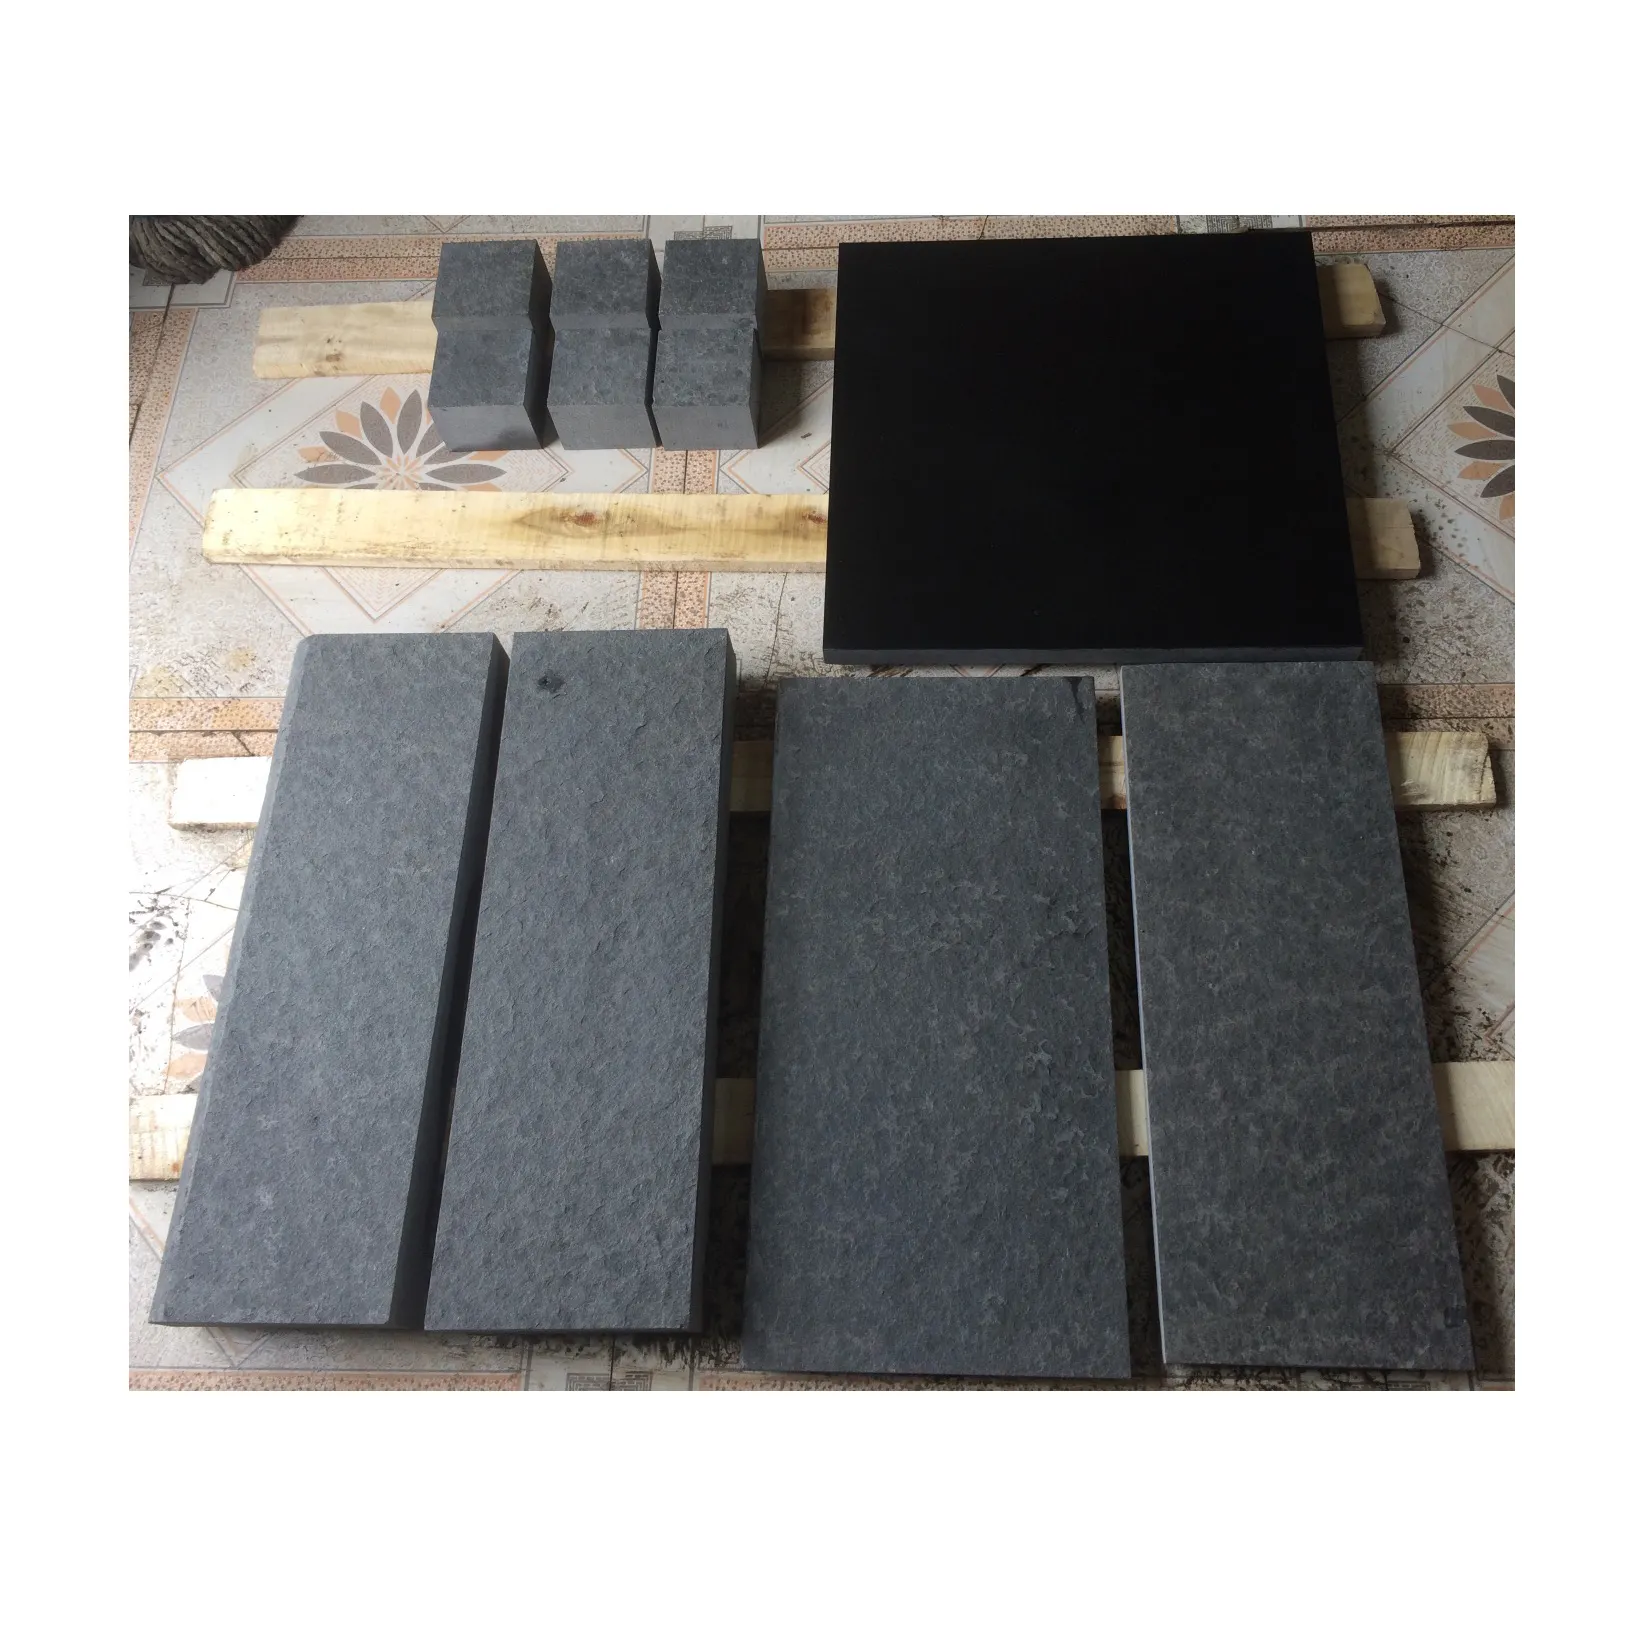 Absolute schwarze Granit fliesen Stein für polierten, China Standard größe Shangxi Black Granite